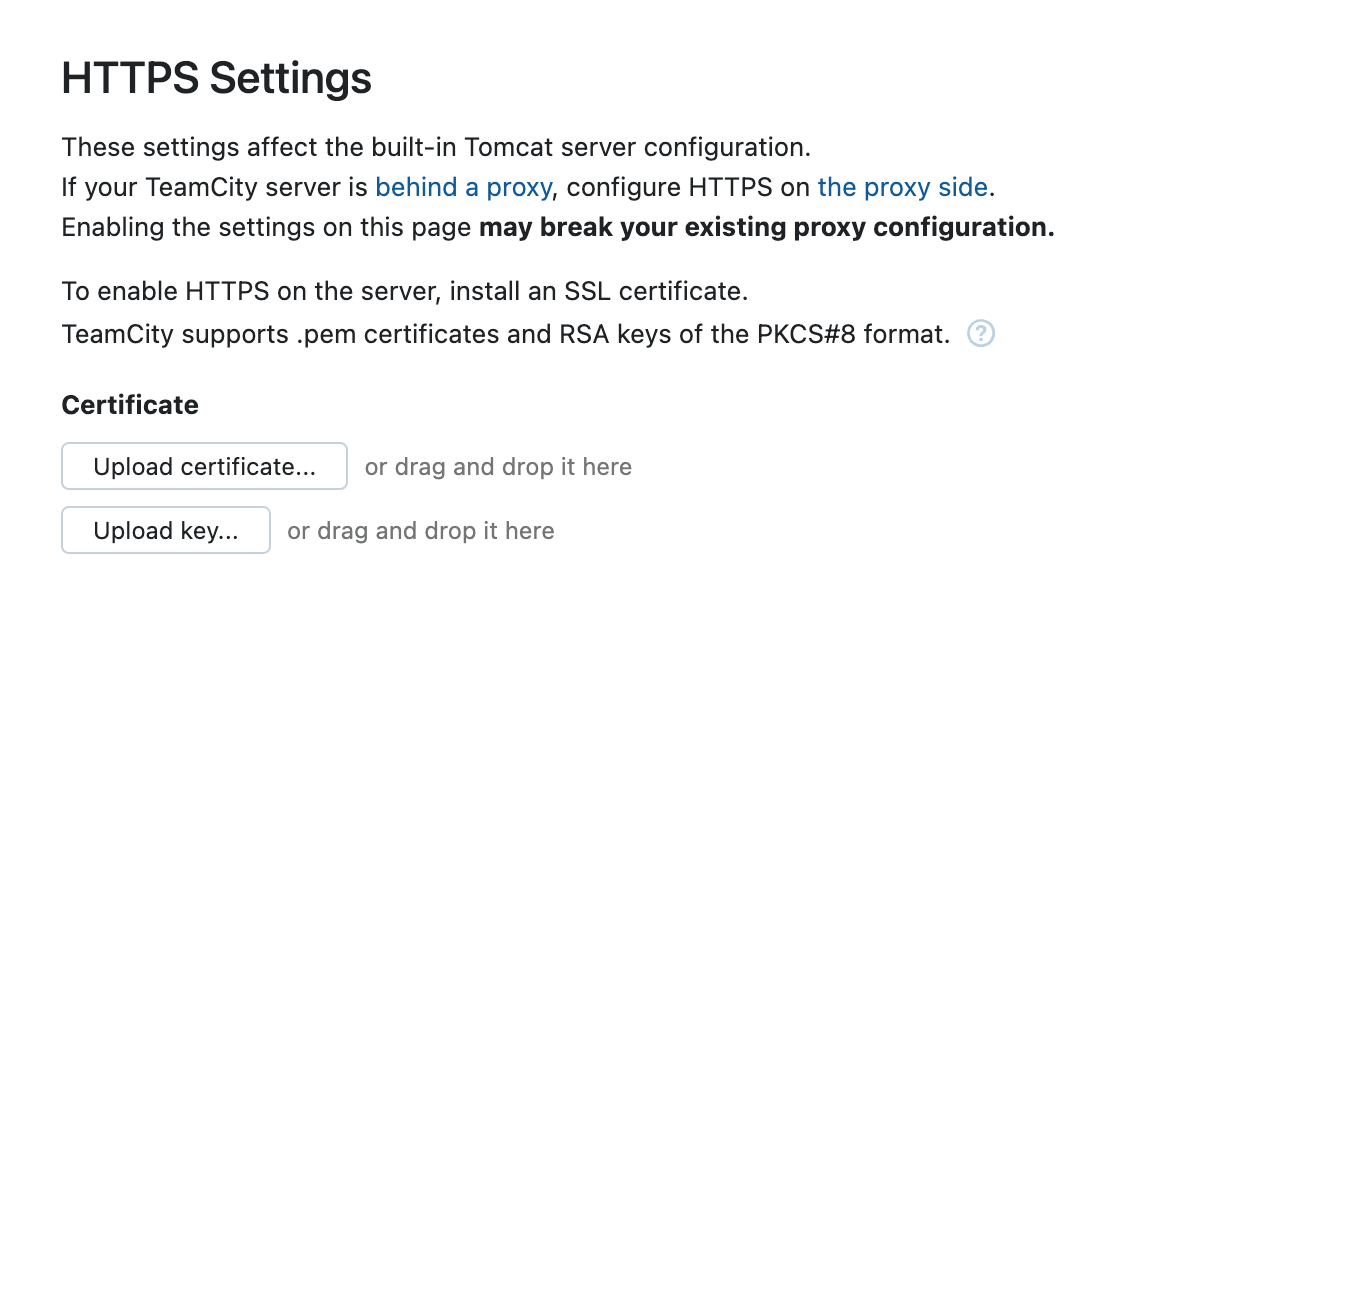 开箱即用的 HTTPS 支持